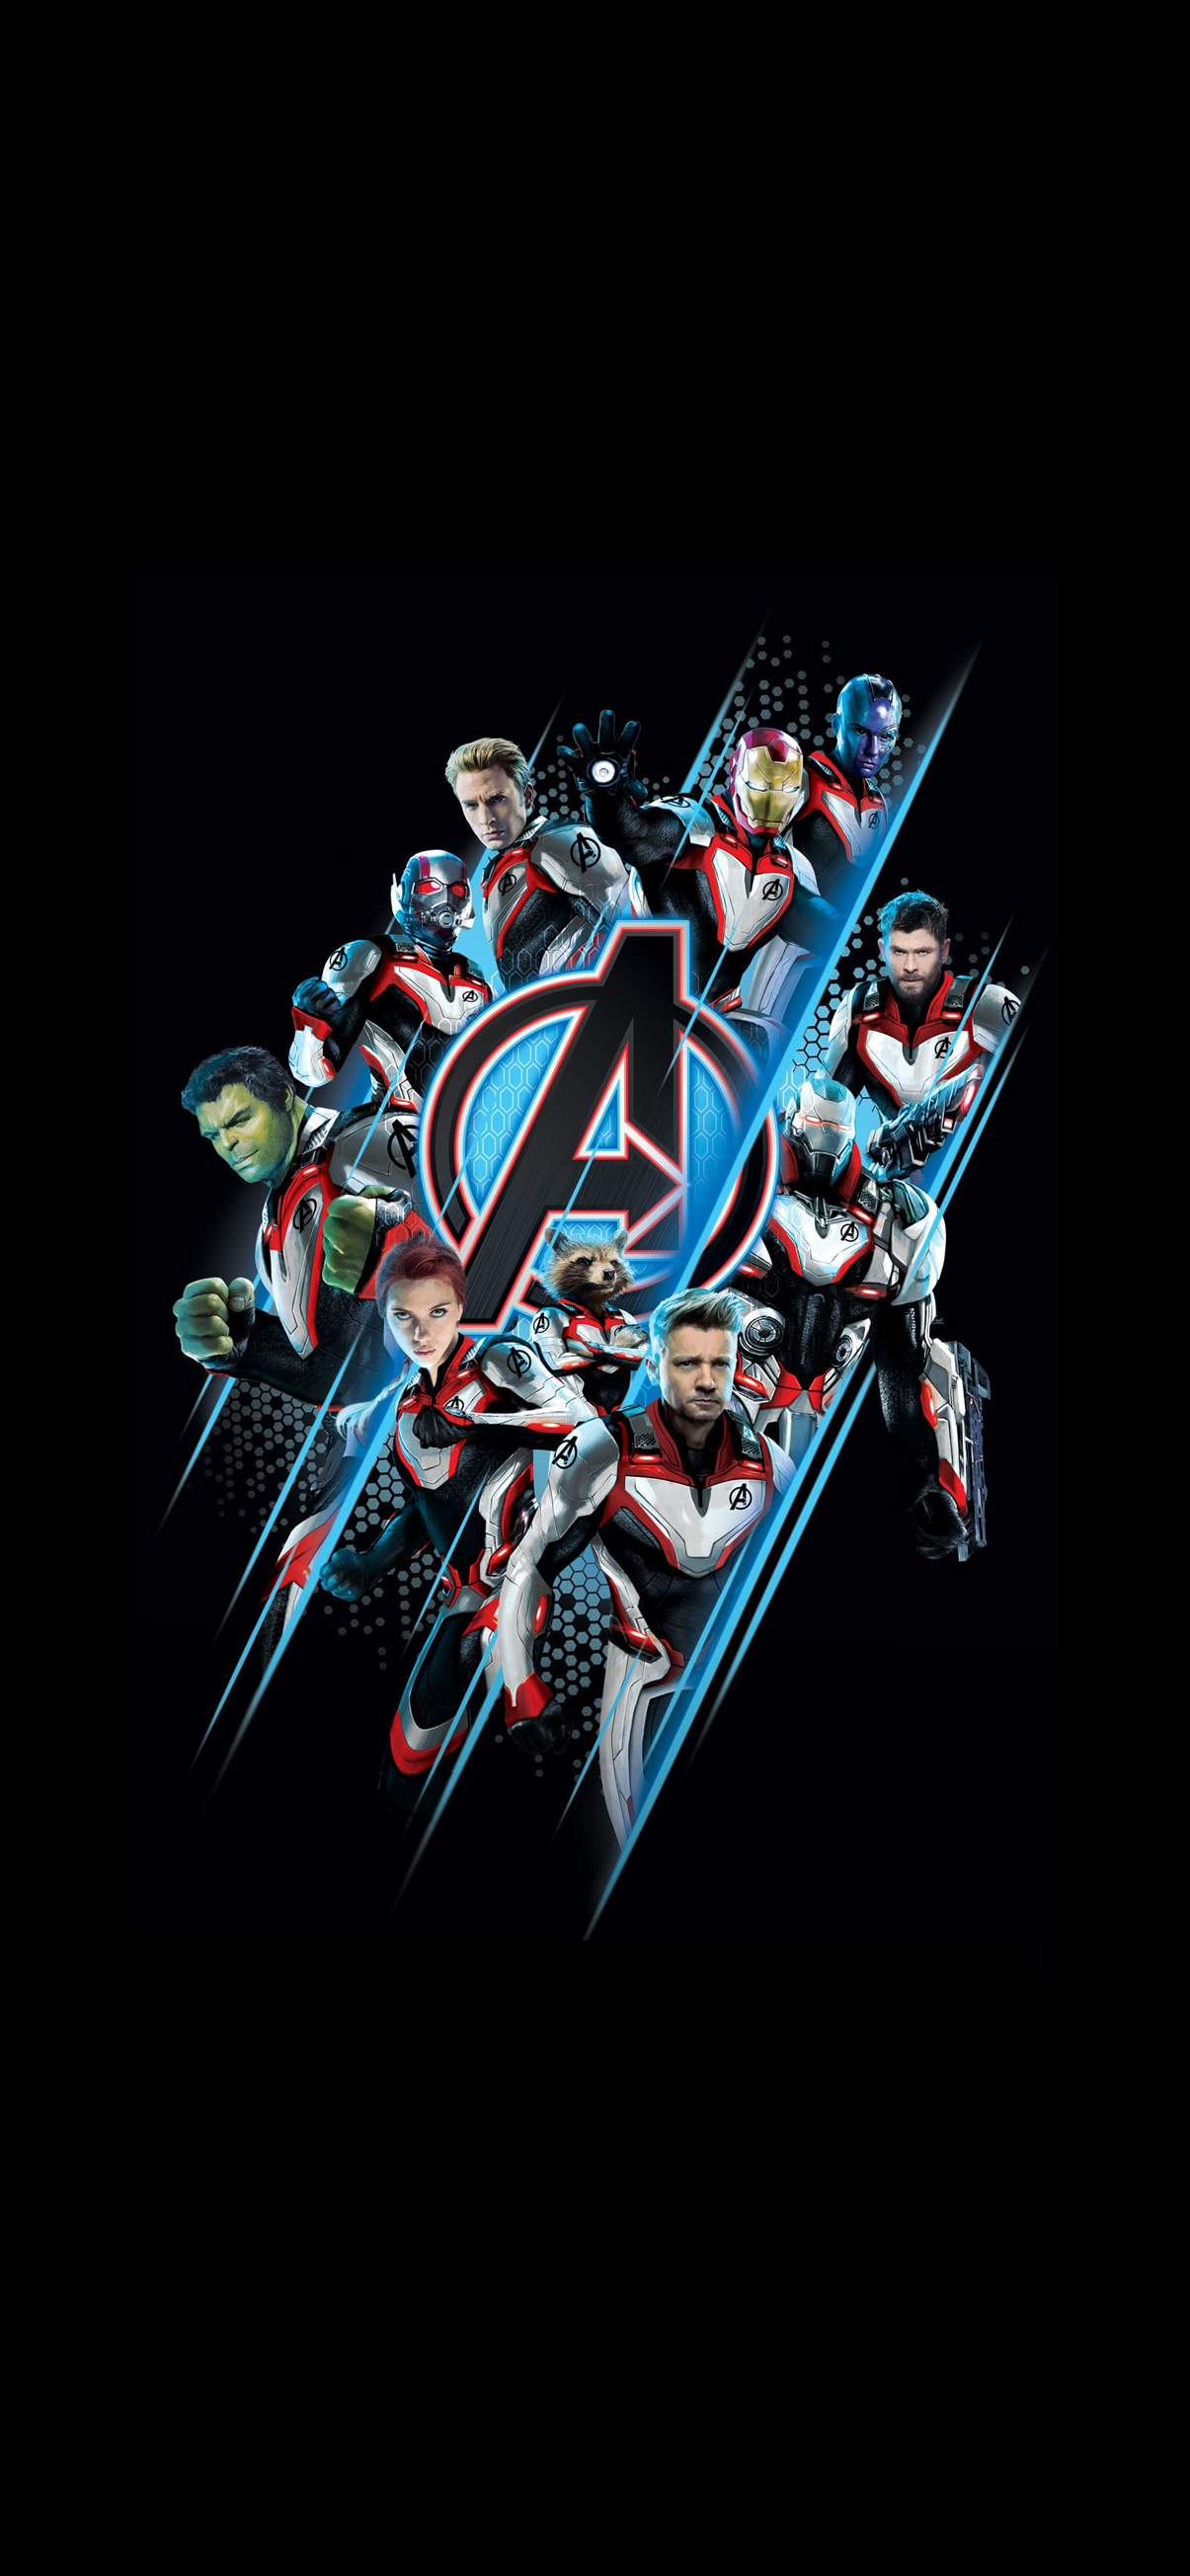 Avengers Endgame Group